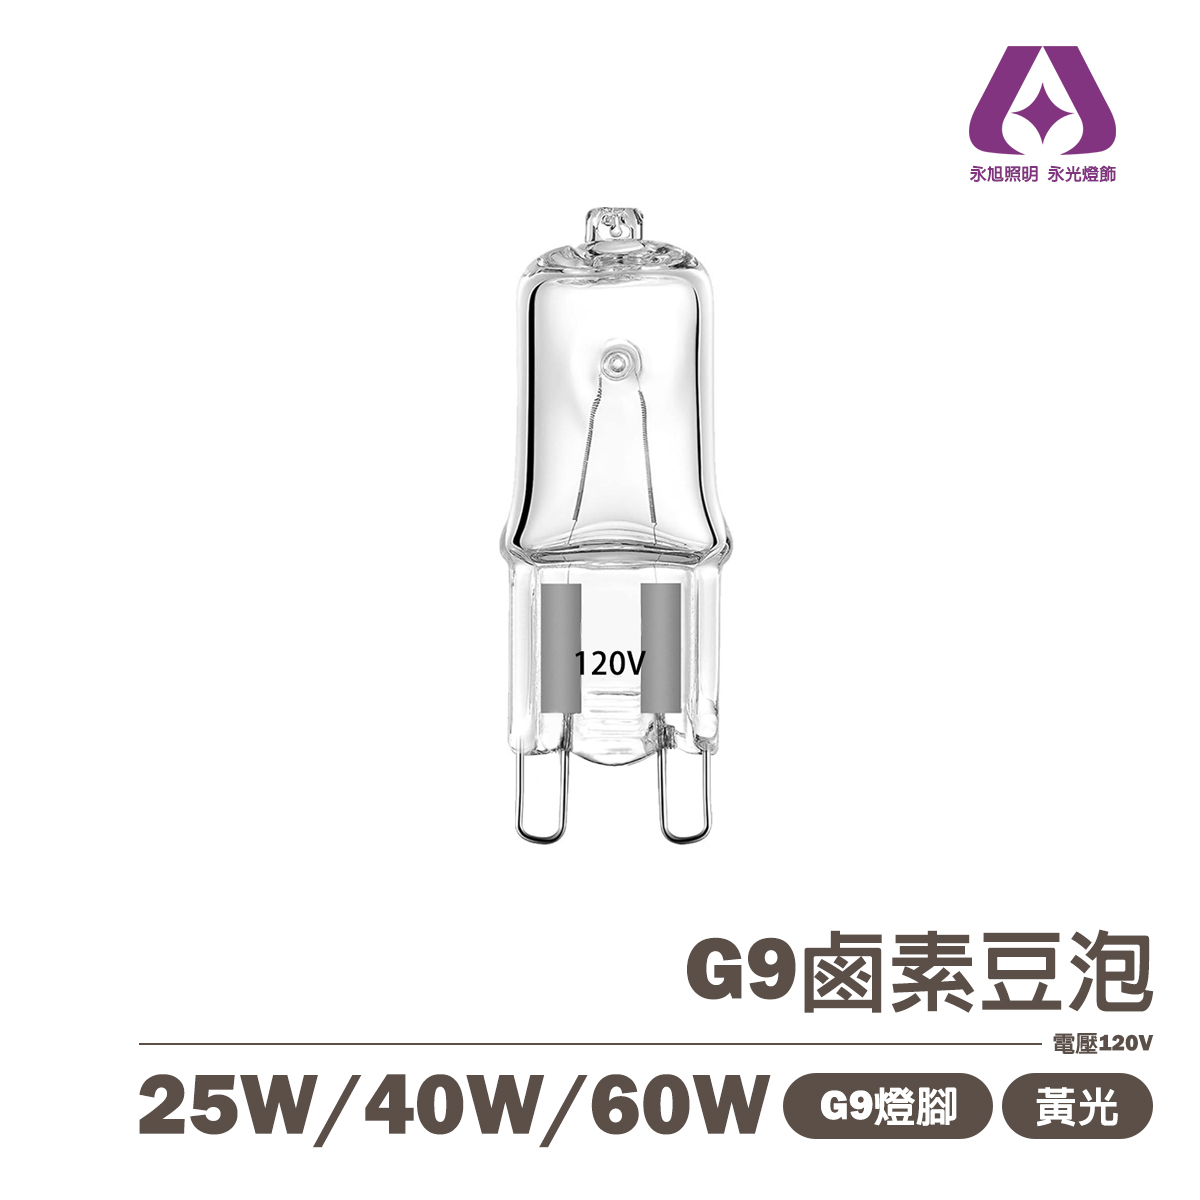 傳統G9燈泡 25W/40W/60W 電壓110V 黃光